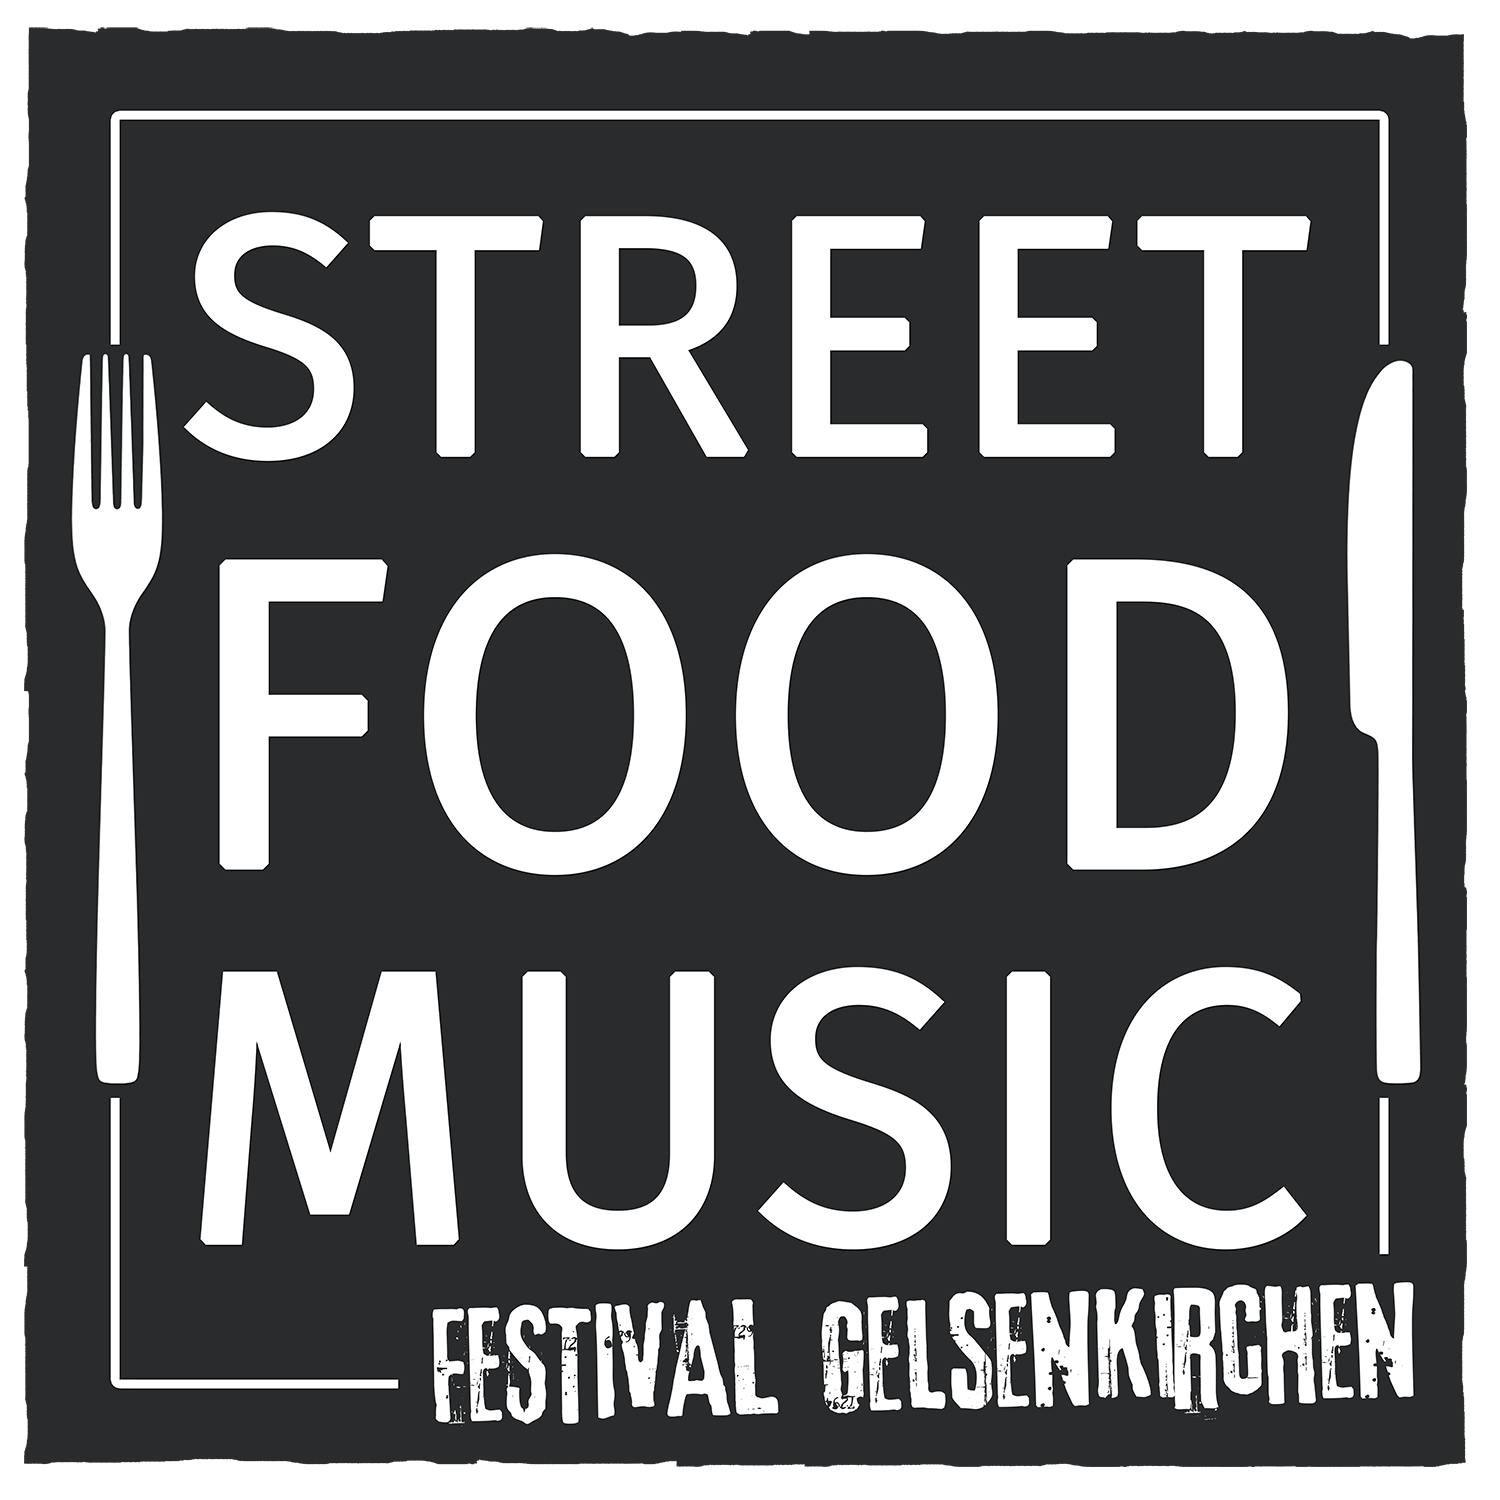 Street Food & Music Festival Gelsenkirchen